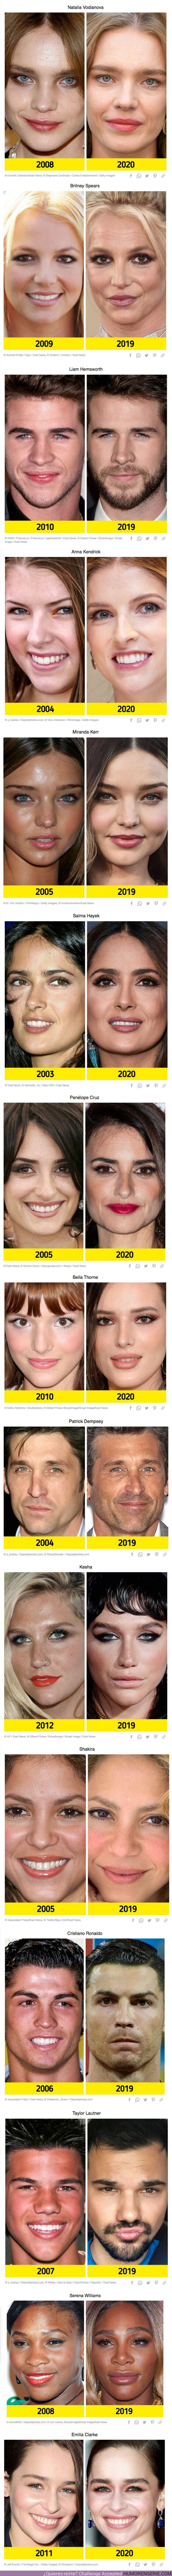 72861 - GALERÍA: 15 Comparaciones que demuestran cómo han cambiado los rostros de los famosos con el paso de los años